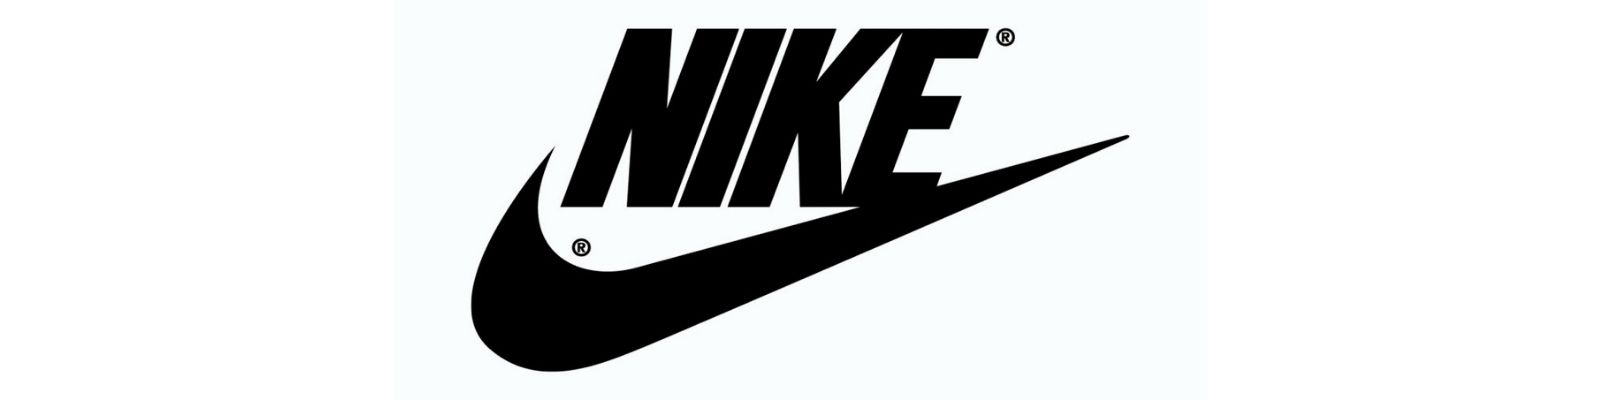 História da Nike: Conheça tudo sobre a Empresa!